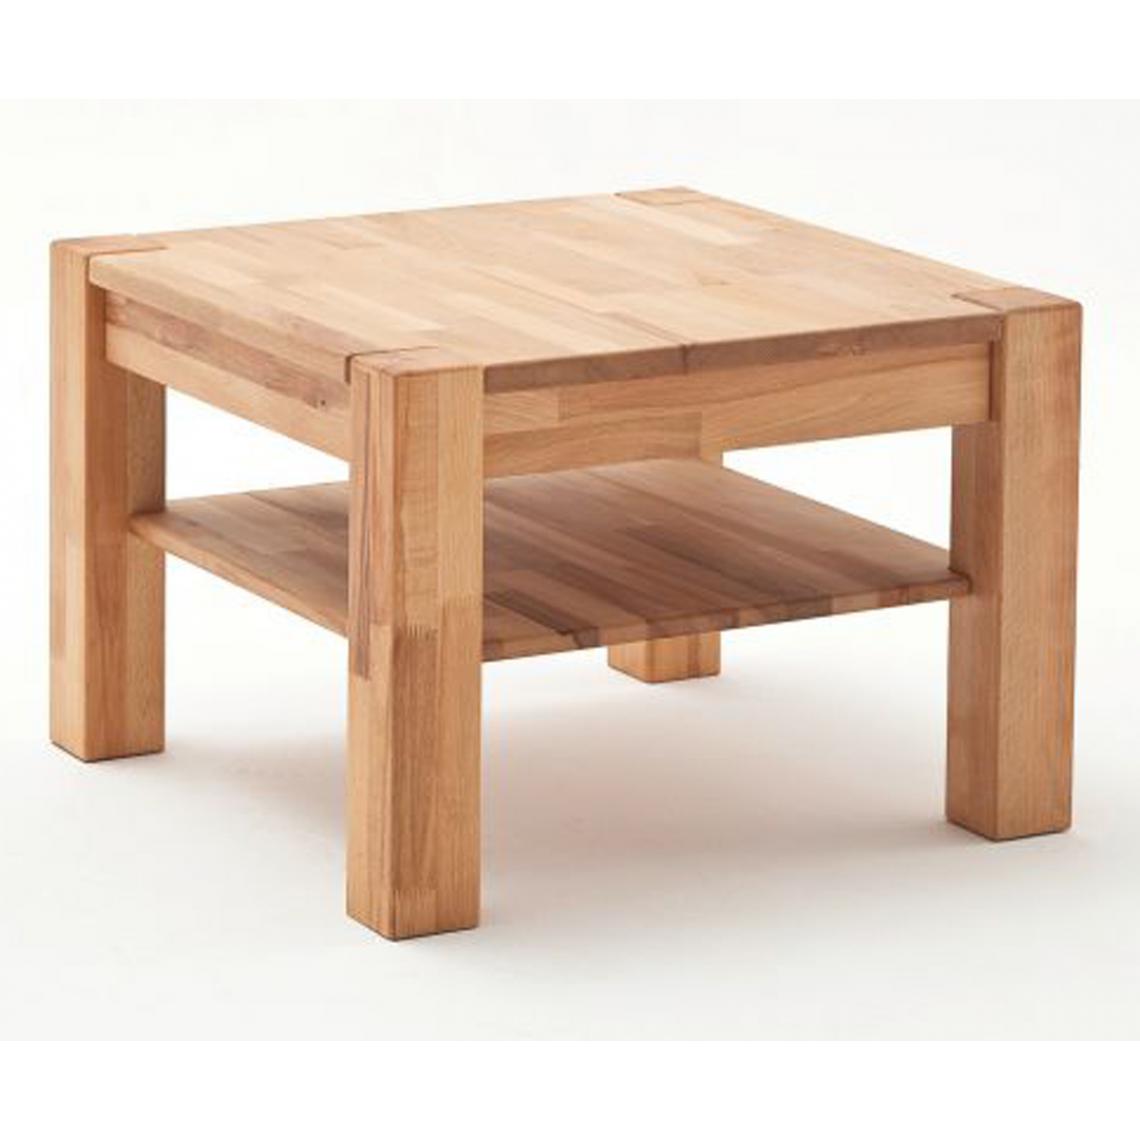 Pegane - Table basse avec rangements en hêtre massif huilé - L.65 x H.45 x P.65 cm - Tables basses